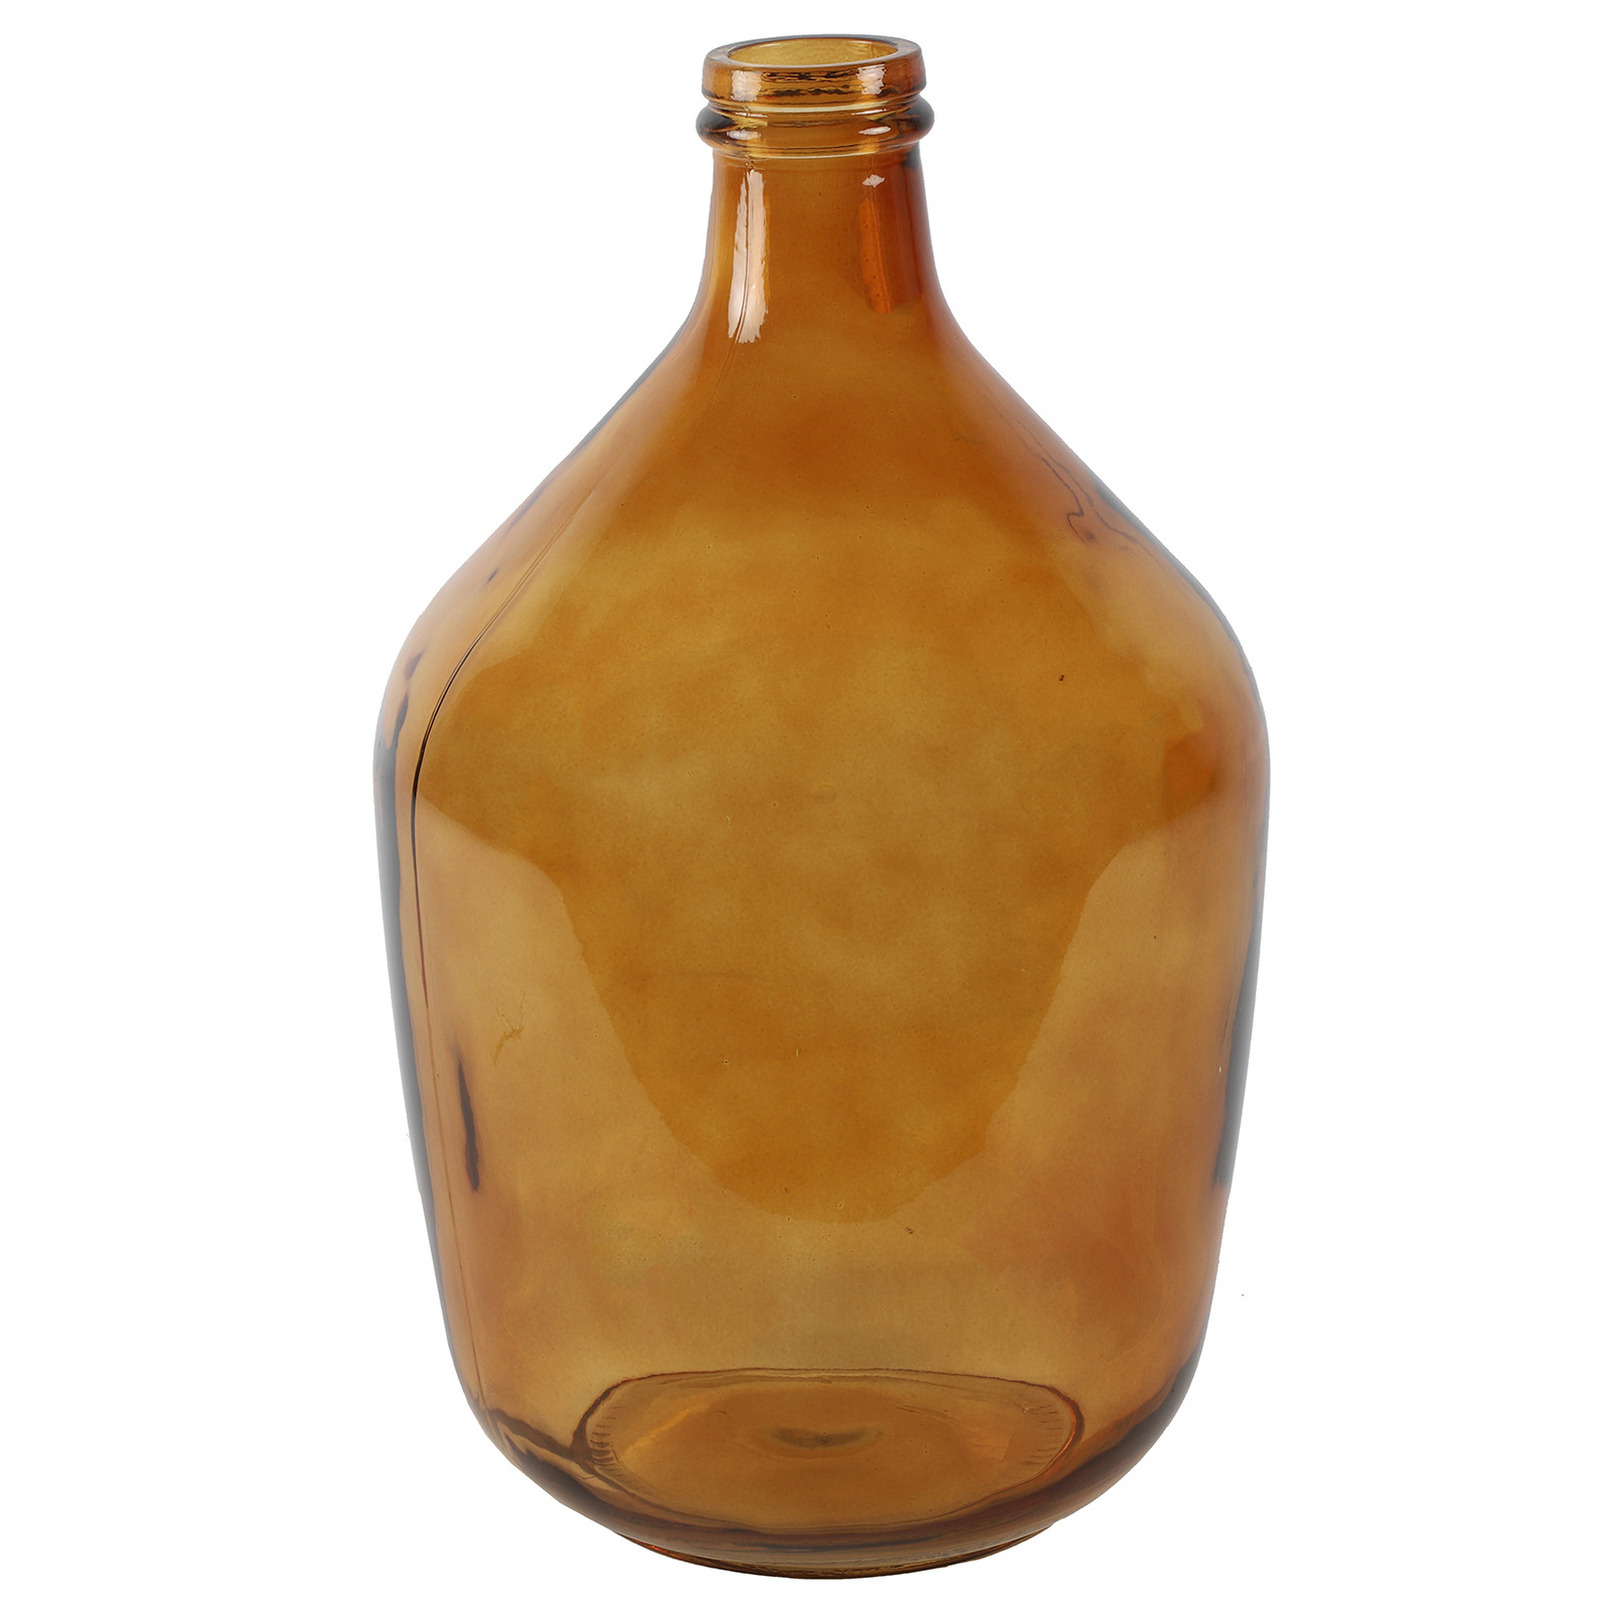 Countryfield vaas - amber goud/geel transparant - glas - fles - D23 x H38 cm -